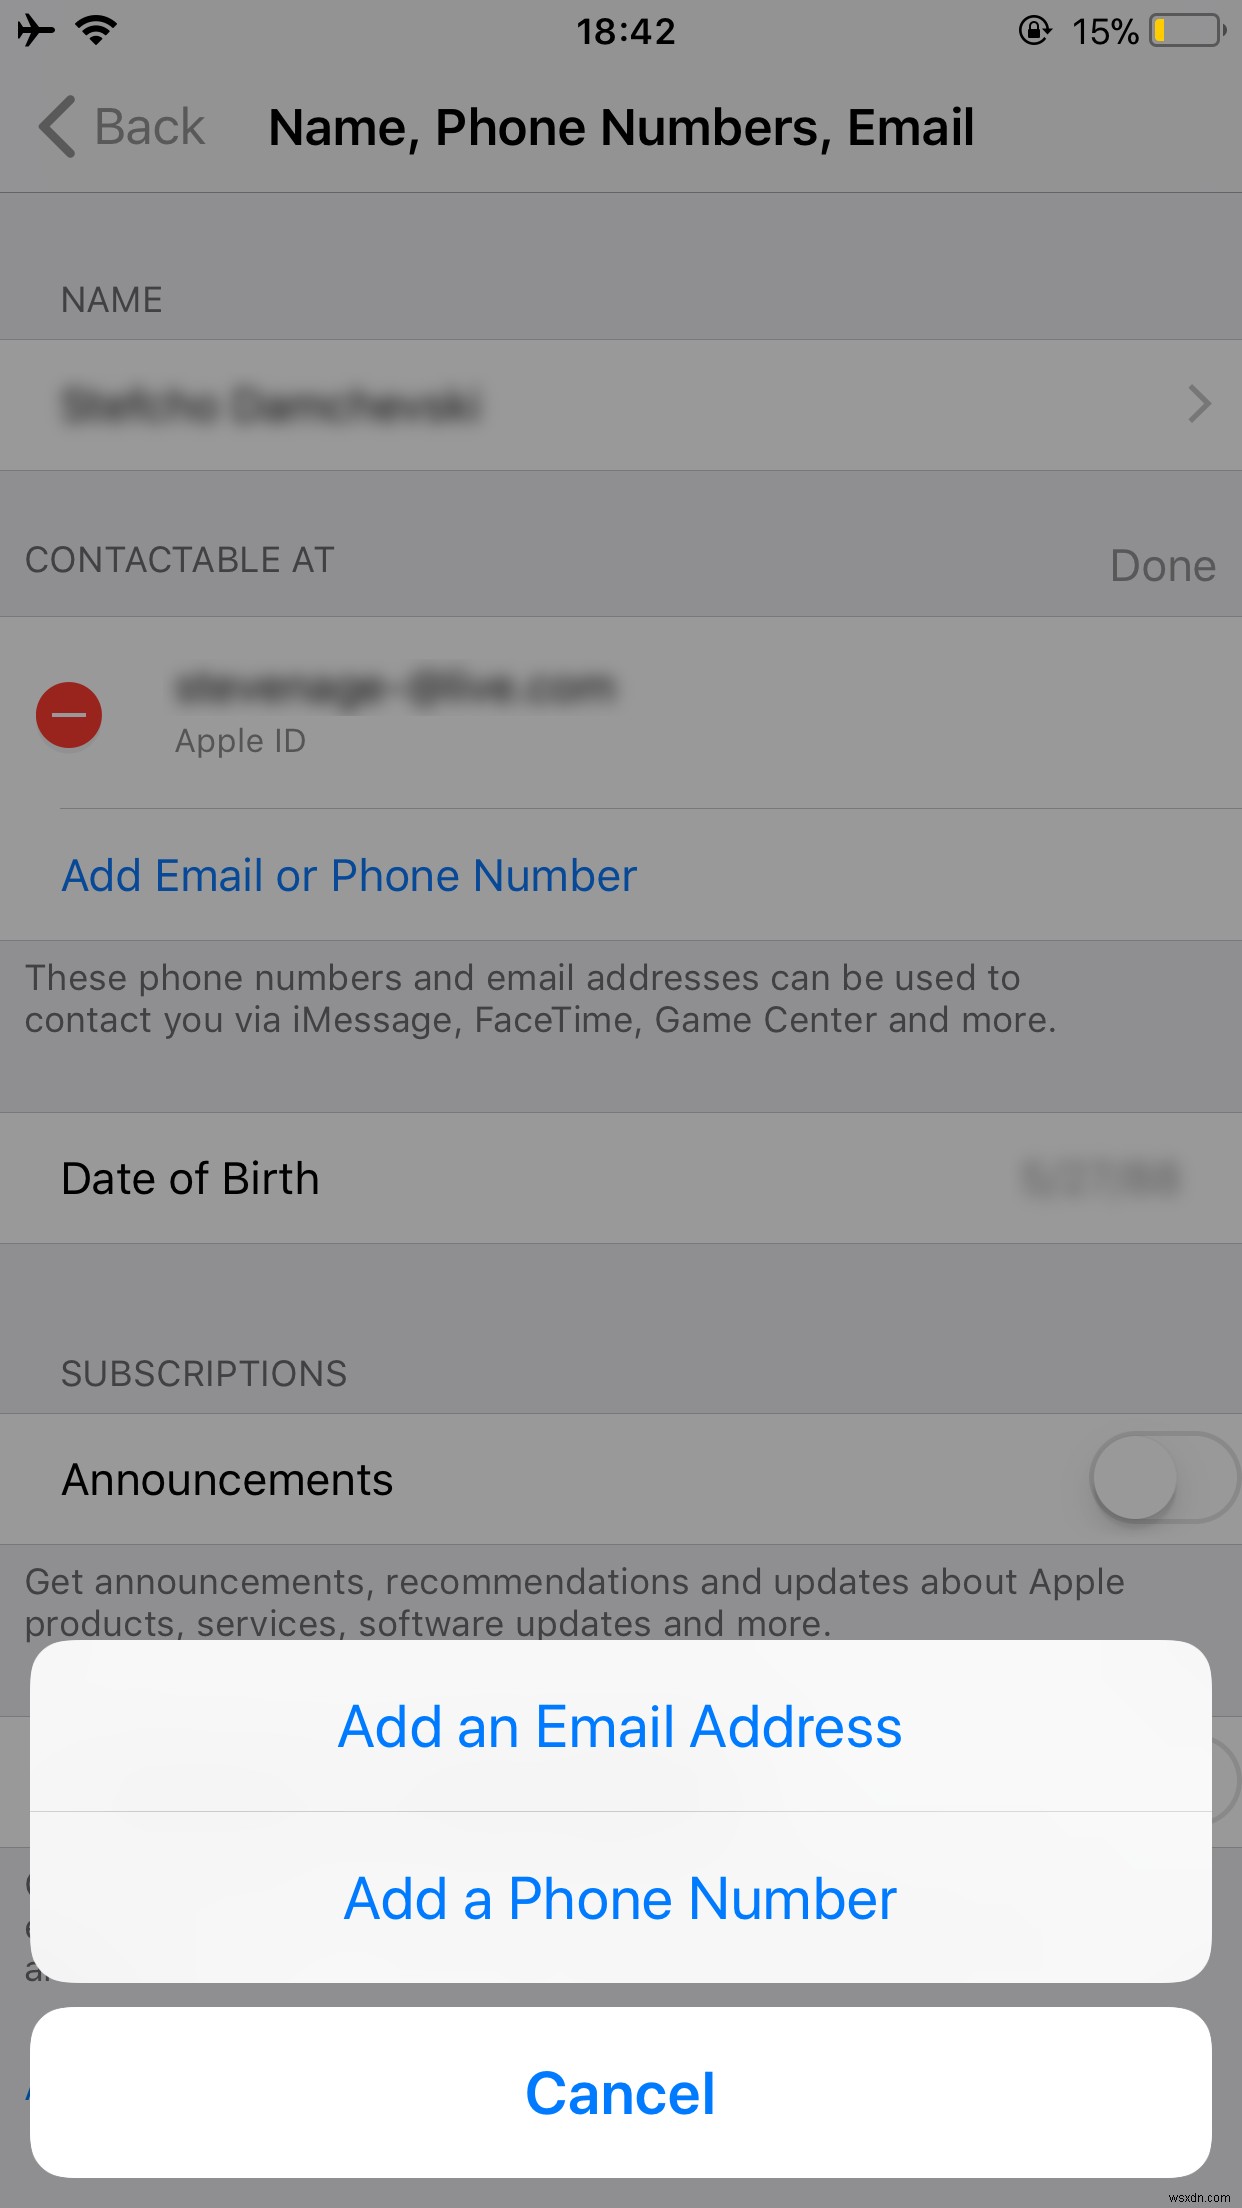 iOS 11에서 FaceTime이 작동하지 않는 문제를 해결하는 방법 